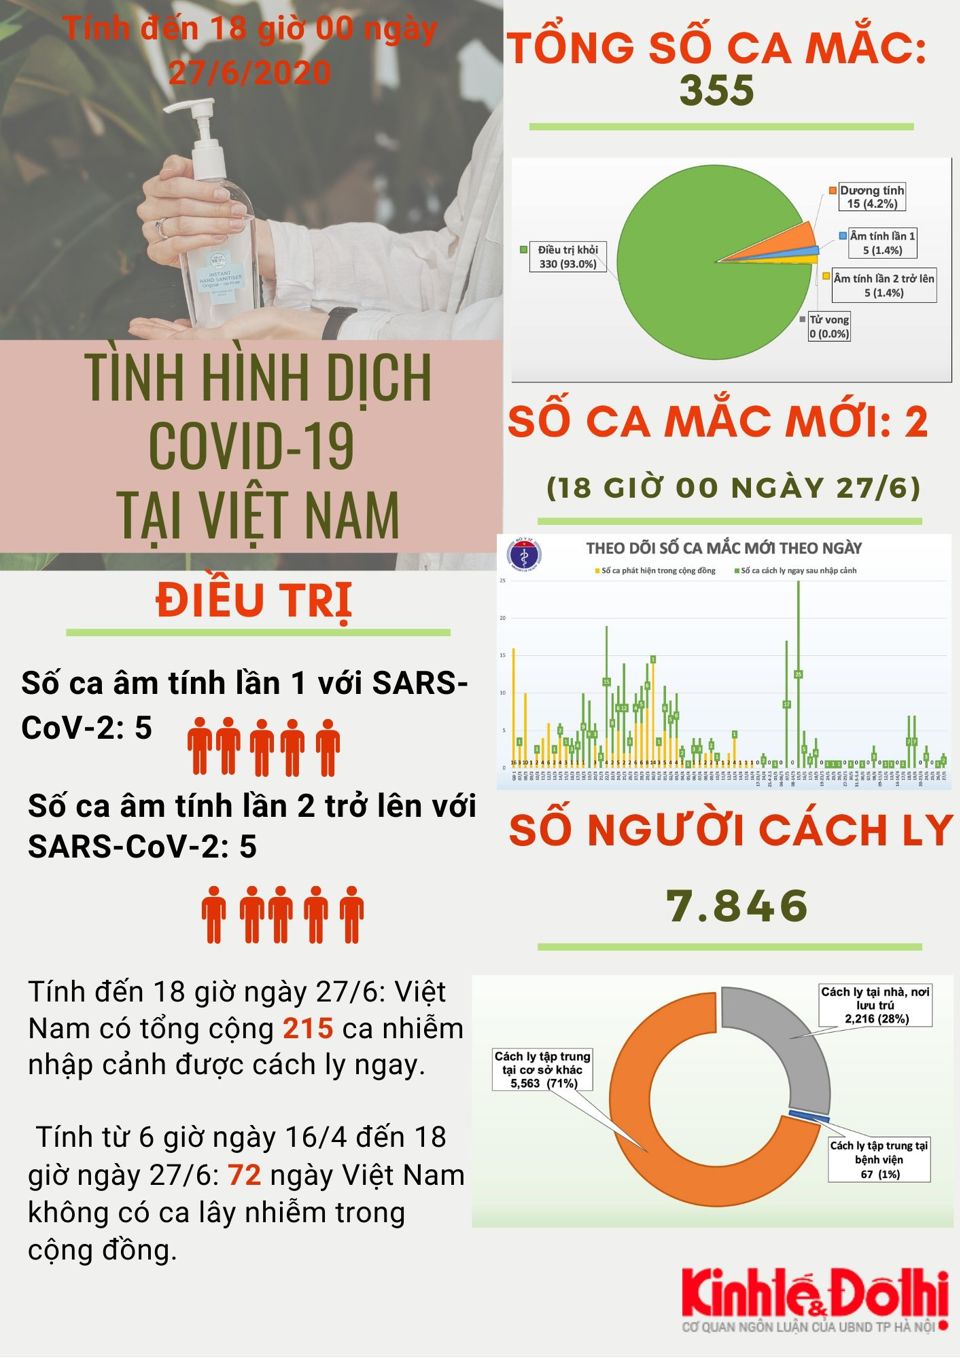 [Infographic] Việt Nam ghi nhận 355 ca mắc Covid-19 - Ảnh 1